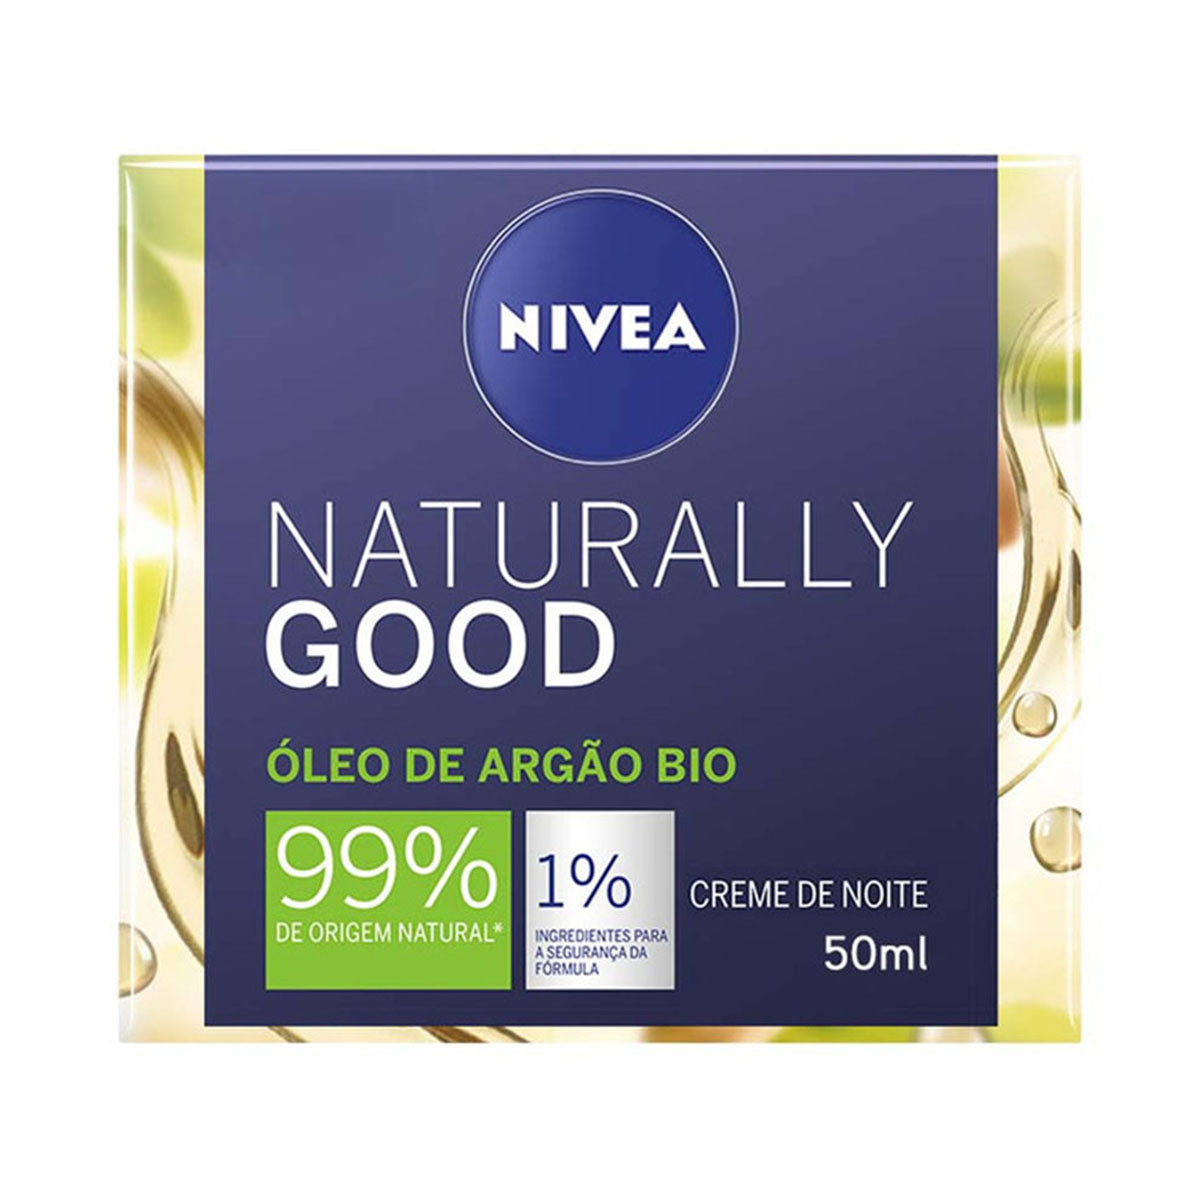 Naturally Good Creme de Noite Óleo de Argão BIO 50 ml - Go Natural